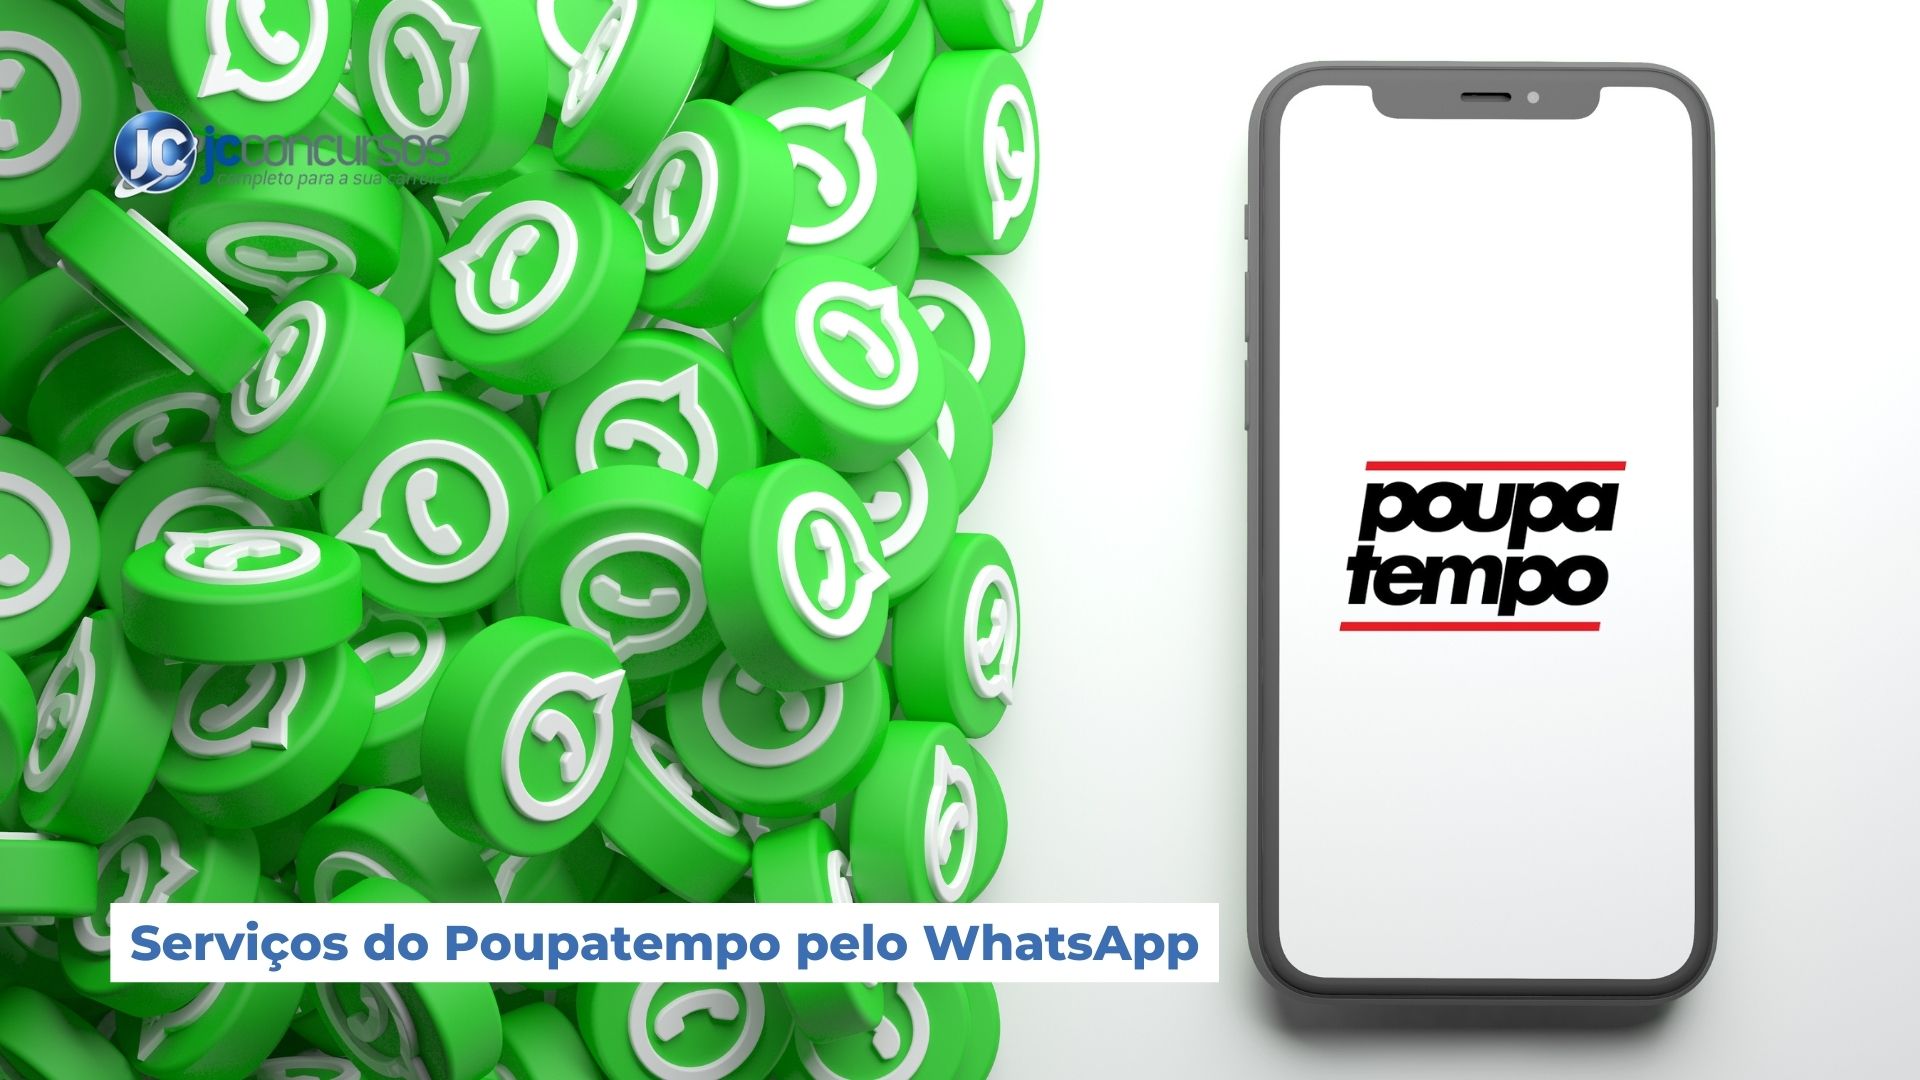 Poupatempo passa a atender pelo WhatsApp - Arujá Repórter